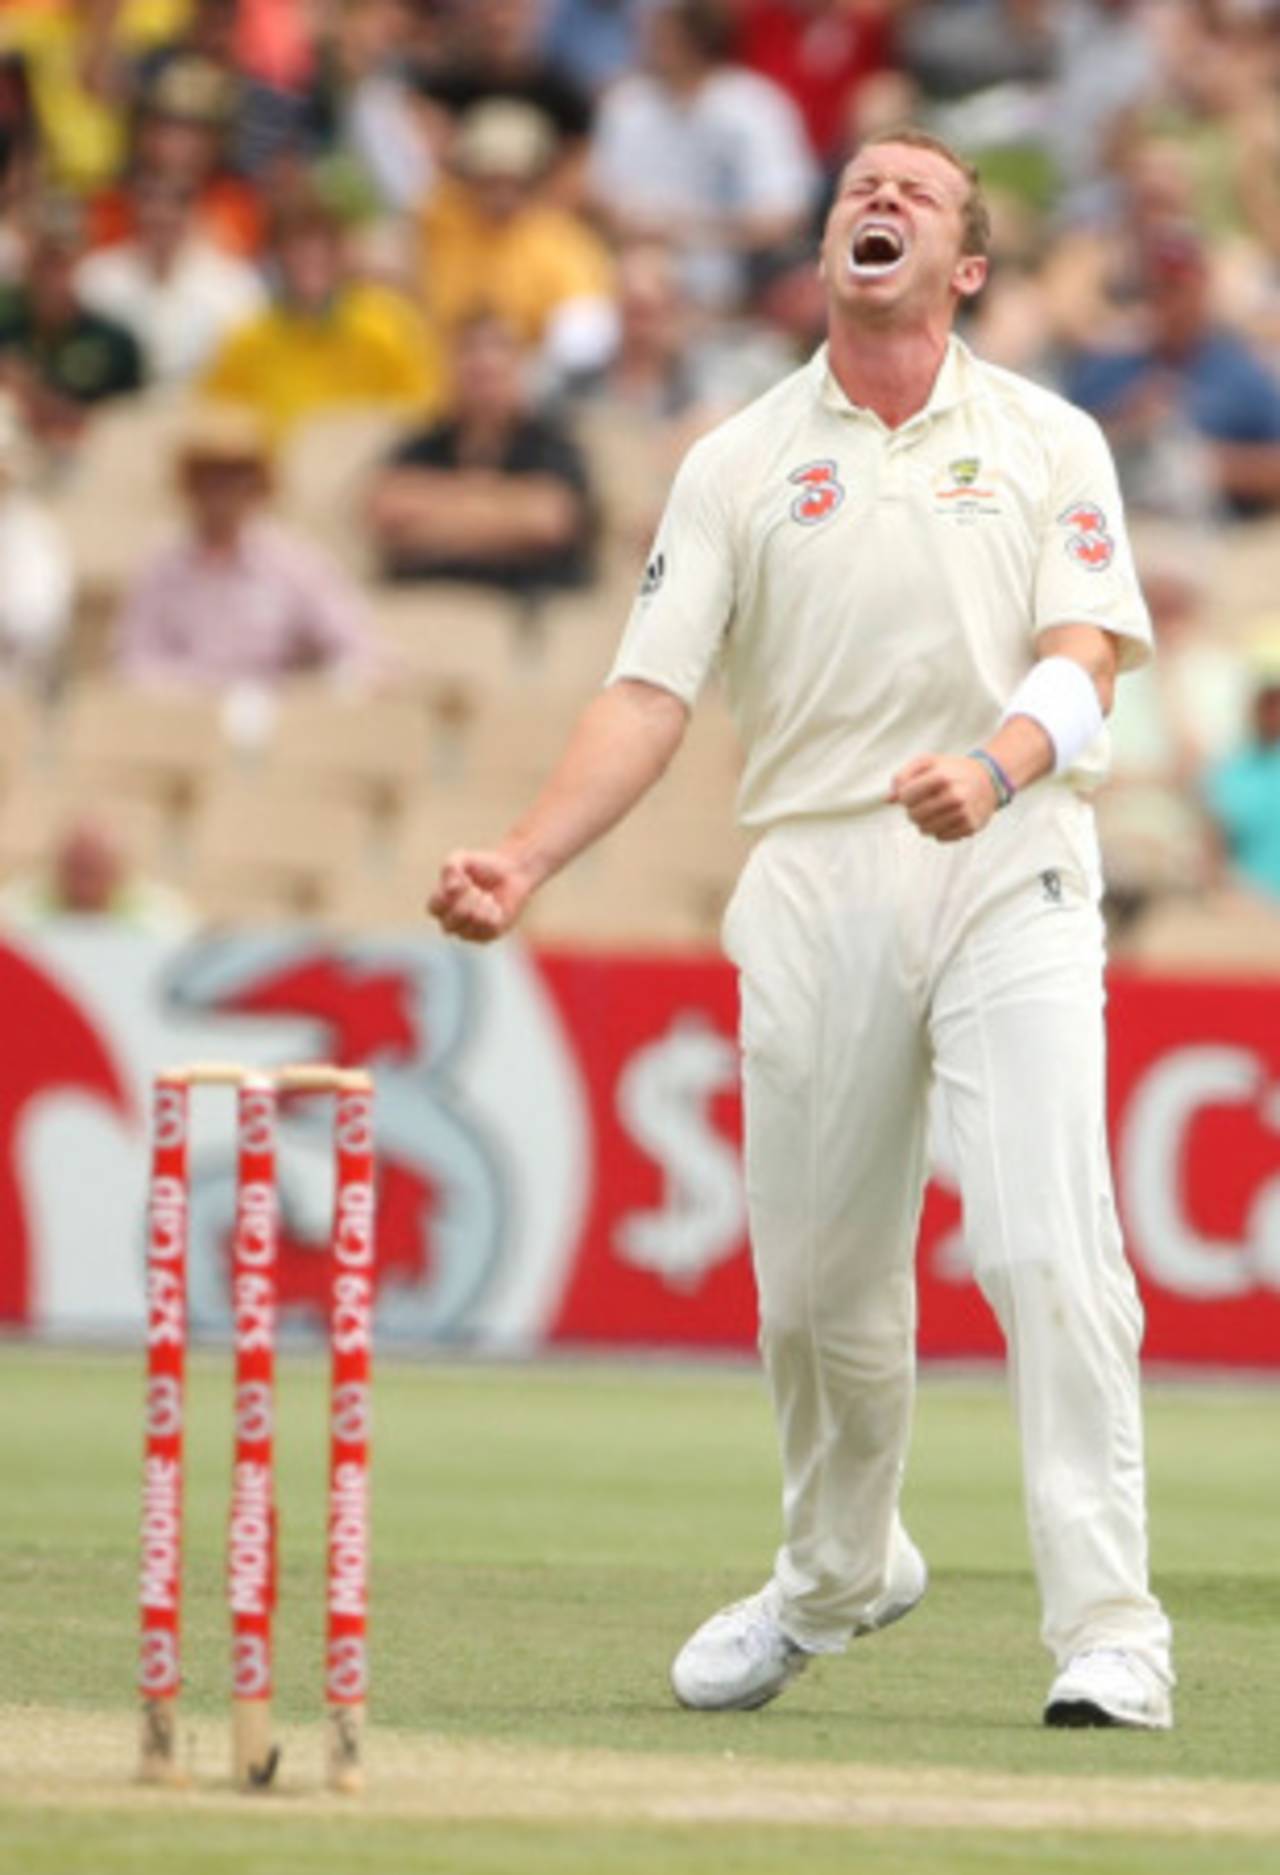 Peter Siddle is pumped after picking up Darren Sammy, Australia v West Indies, 2nd Test, Adelaide, 5 December